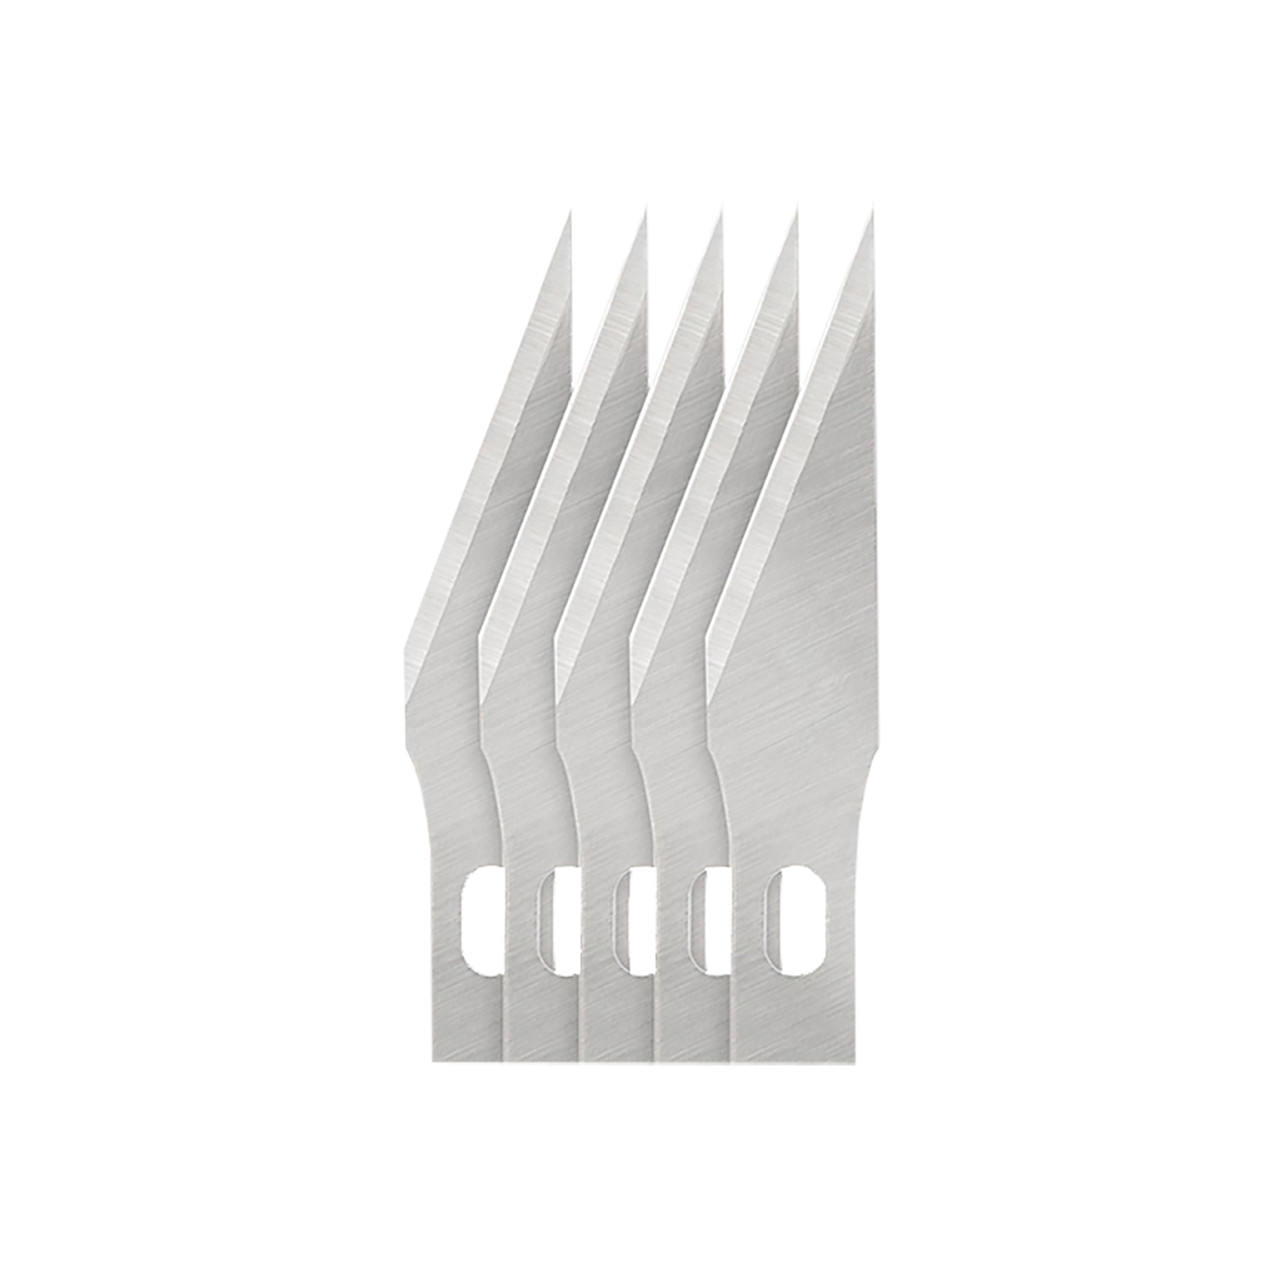 #11 Hobby Knife Blades (5 pack)